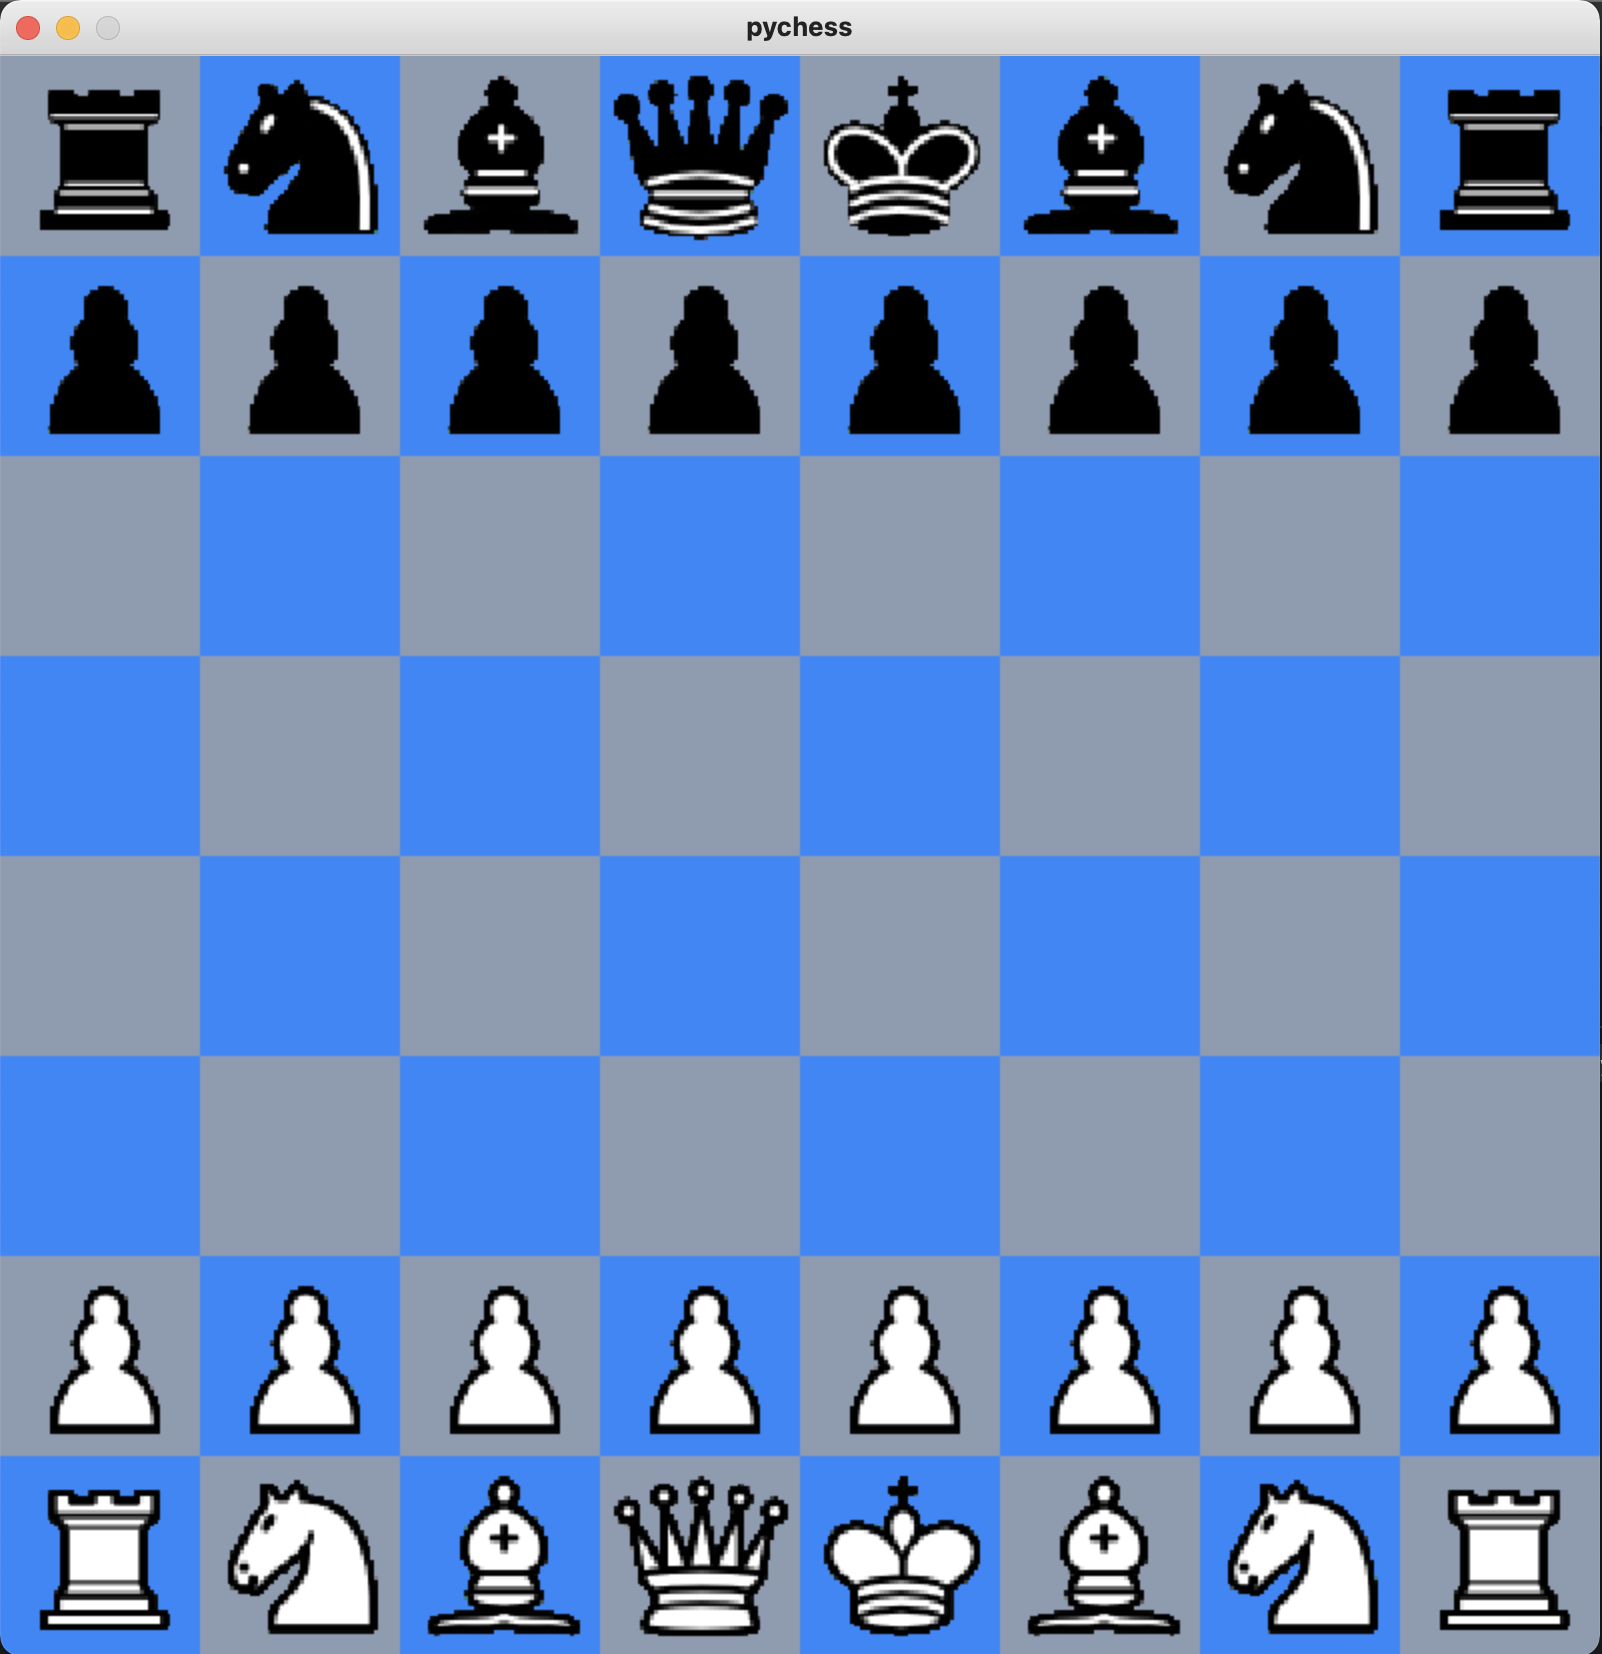 GitHub - prateeksan/chesspi: A database and api for chess games.